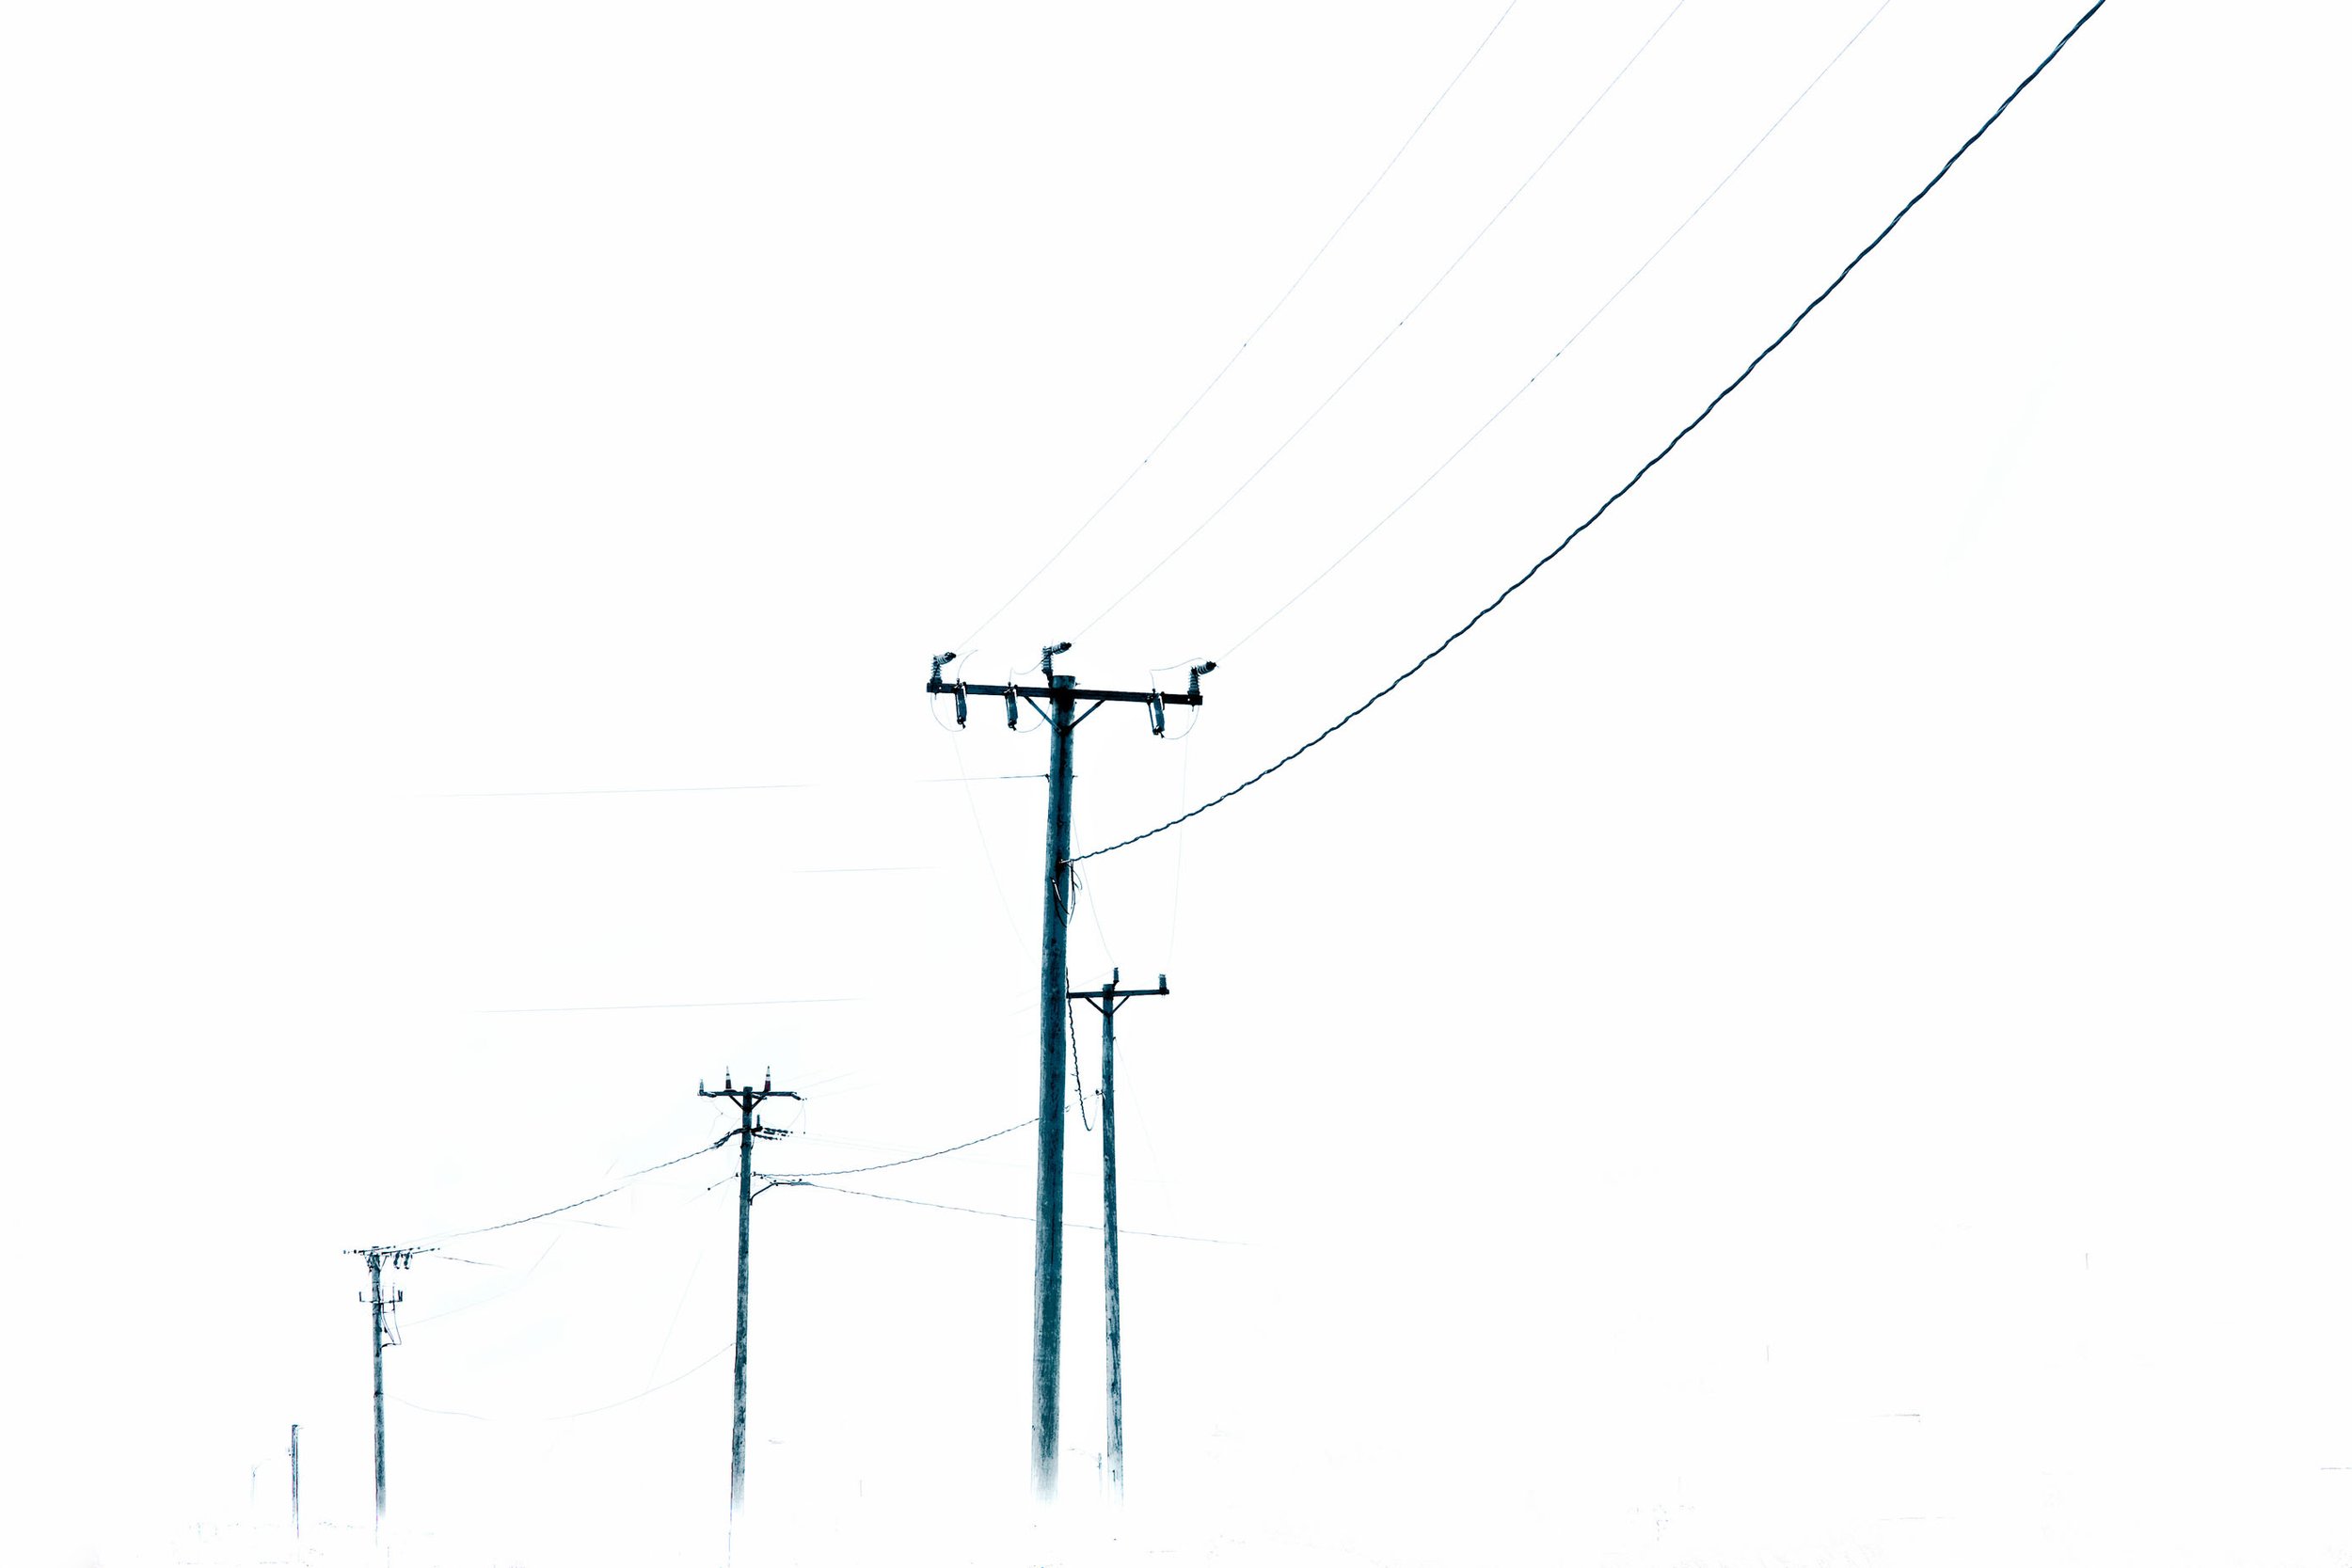    Wires   by Myra R. Hafetz 